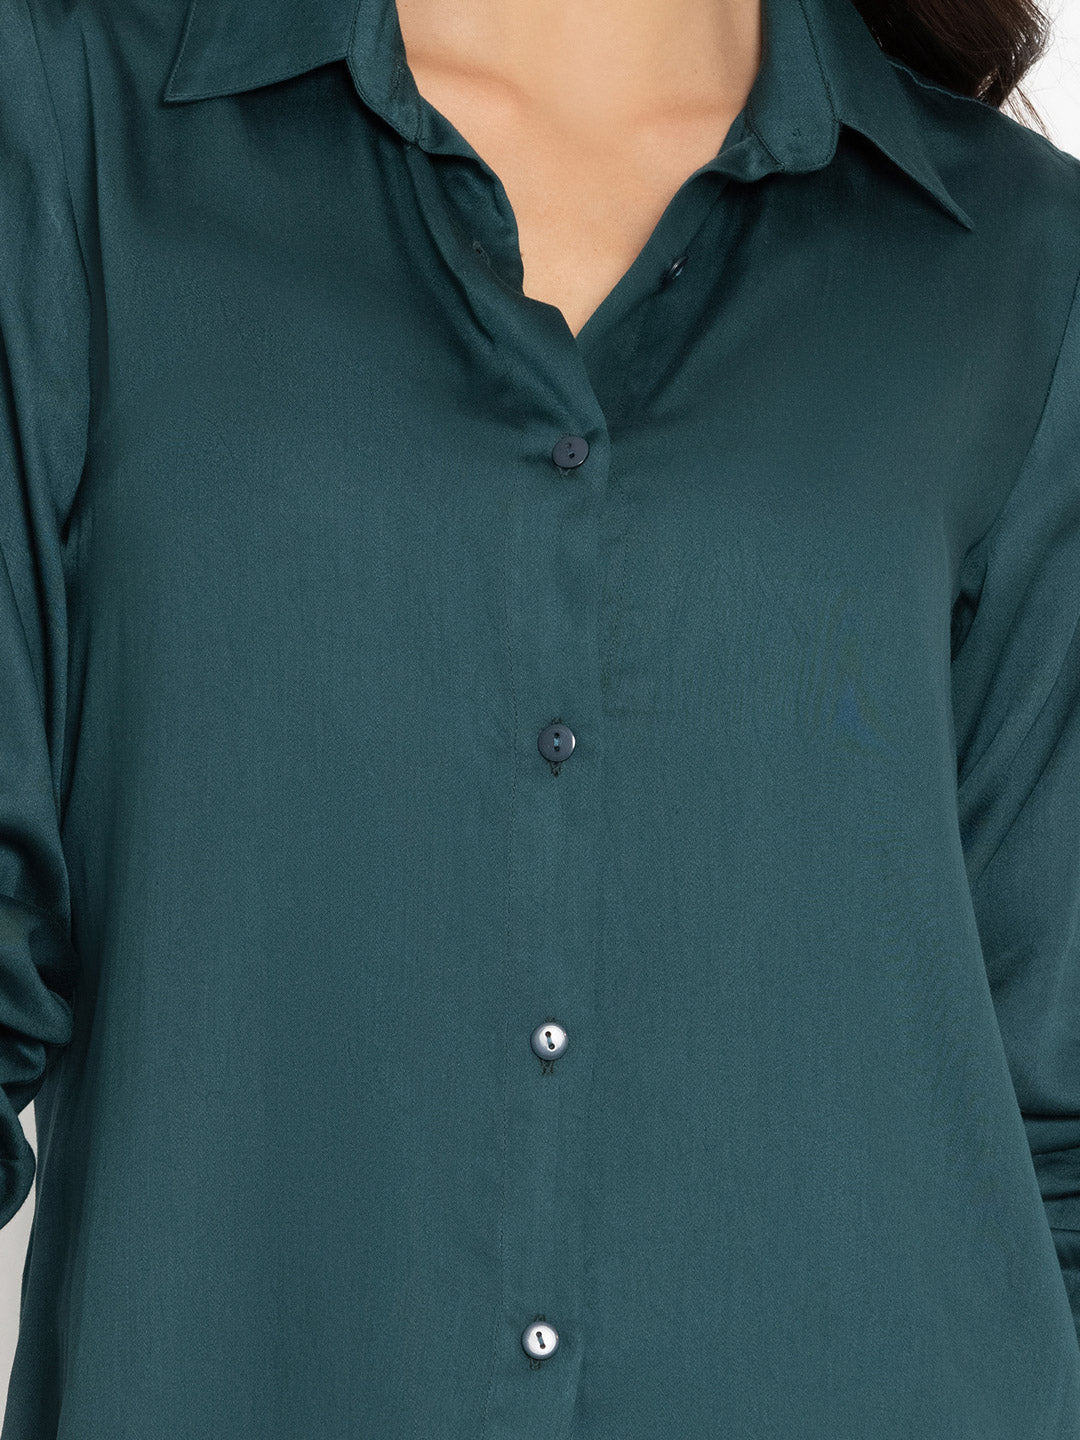 Luxe Green Shirt 